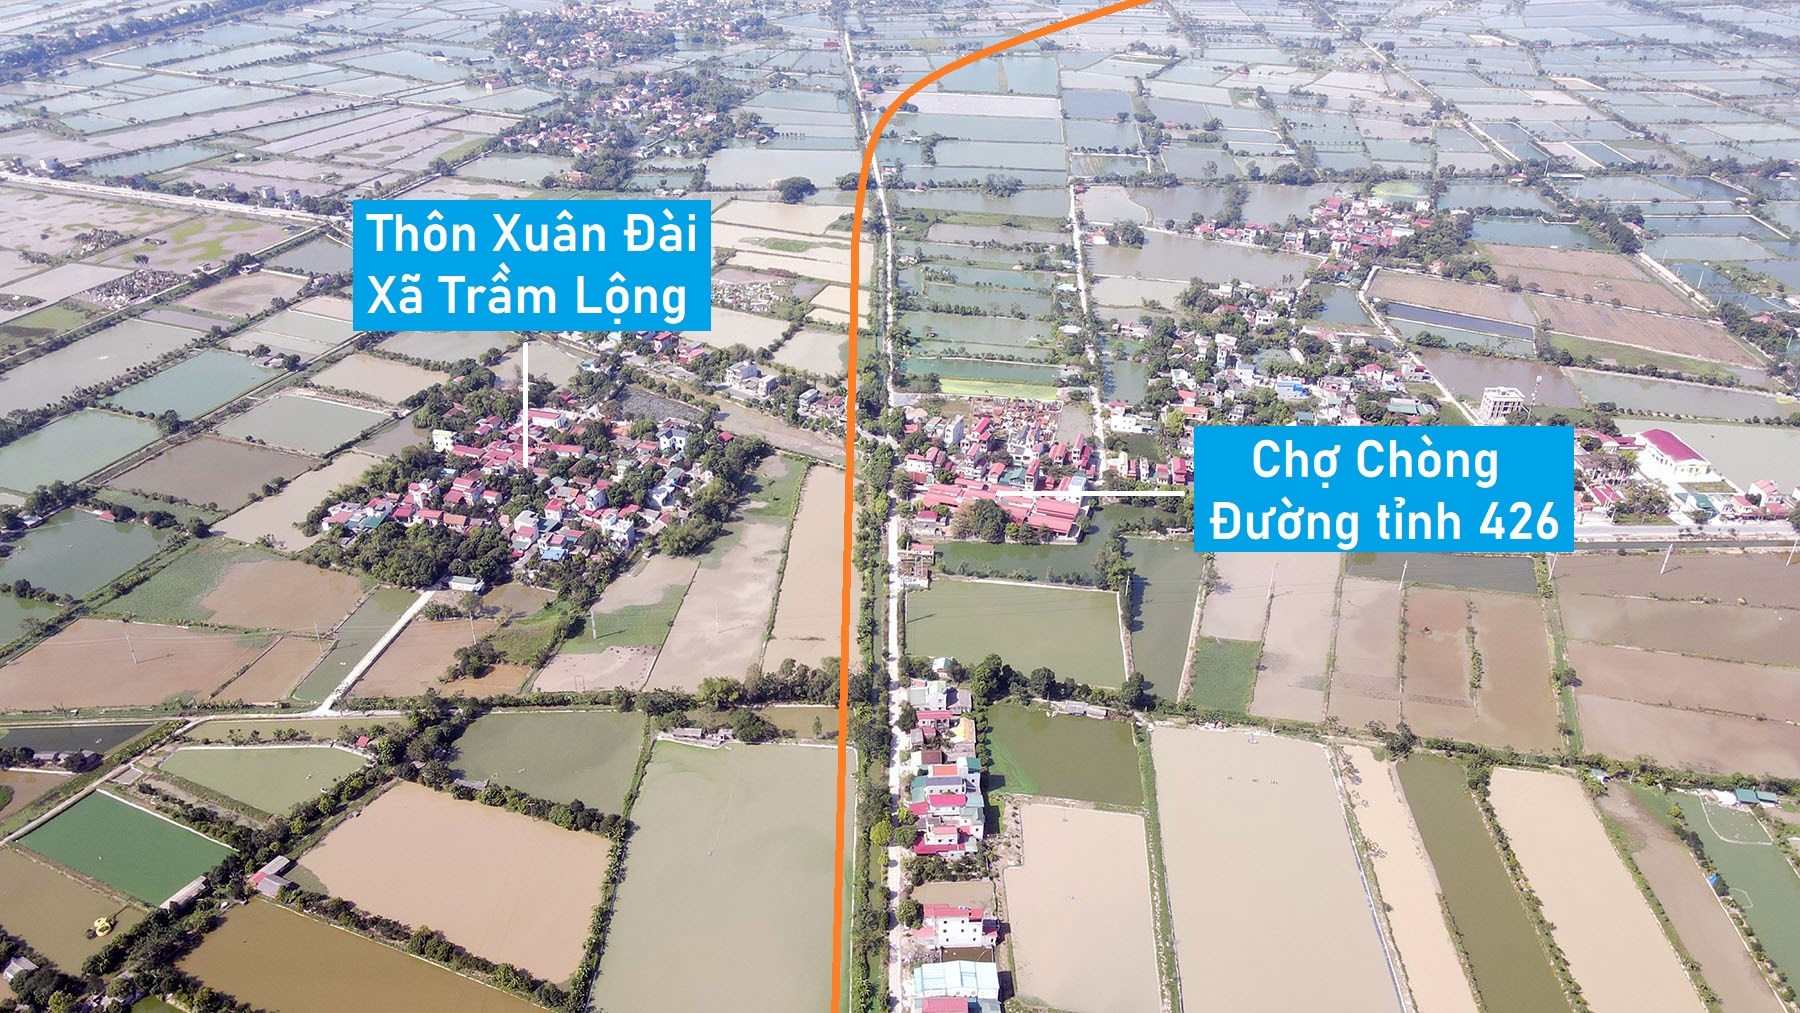 Toàn cảnh đường trục phía nam rộng 40 m đang xây dựng qua huyện Ứng Hòa, Hà Nội